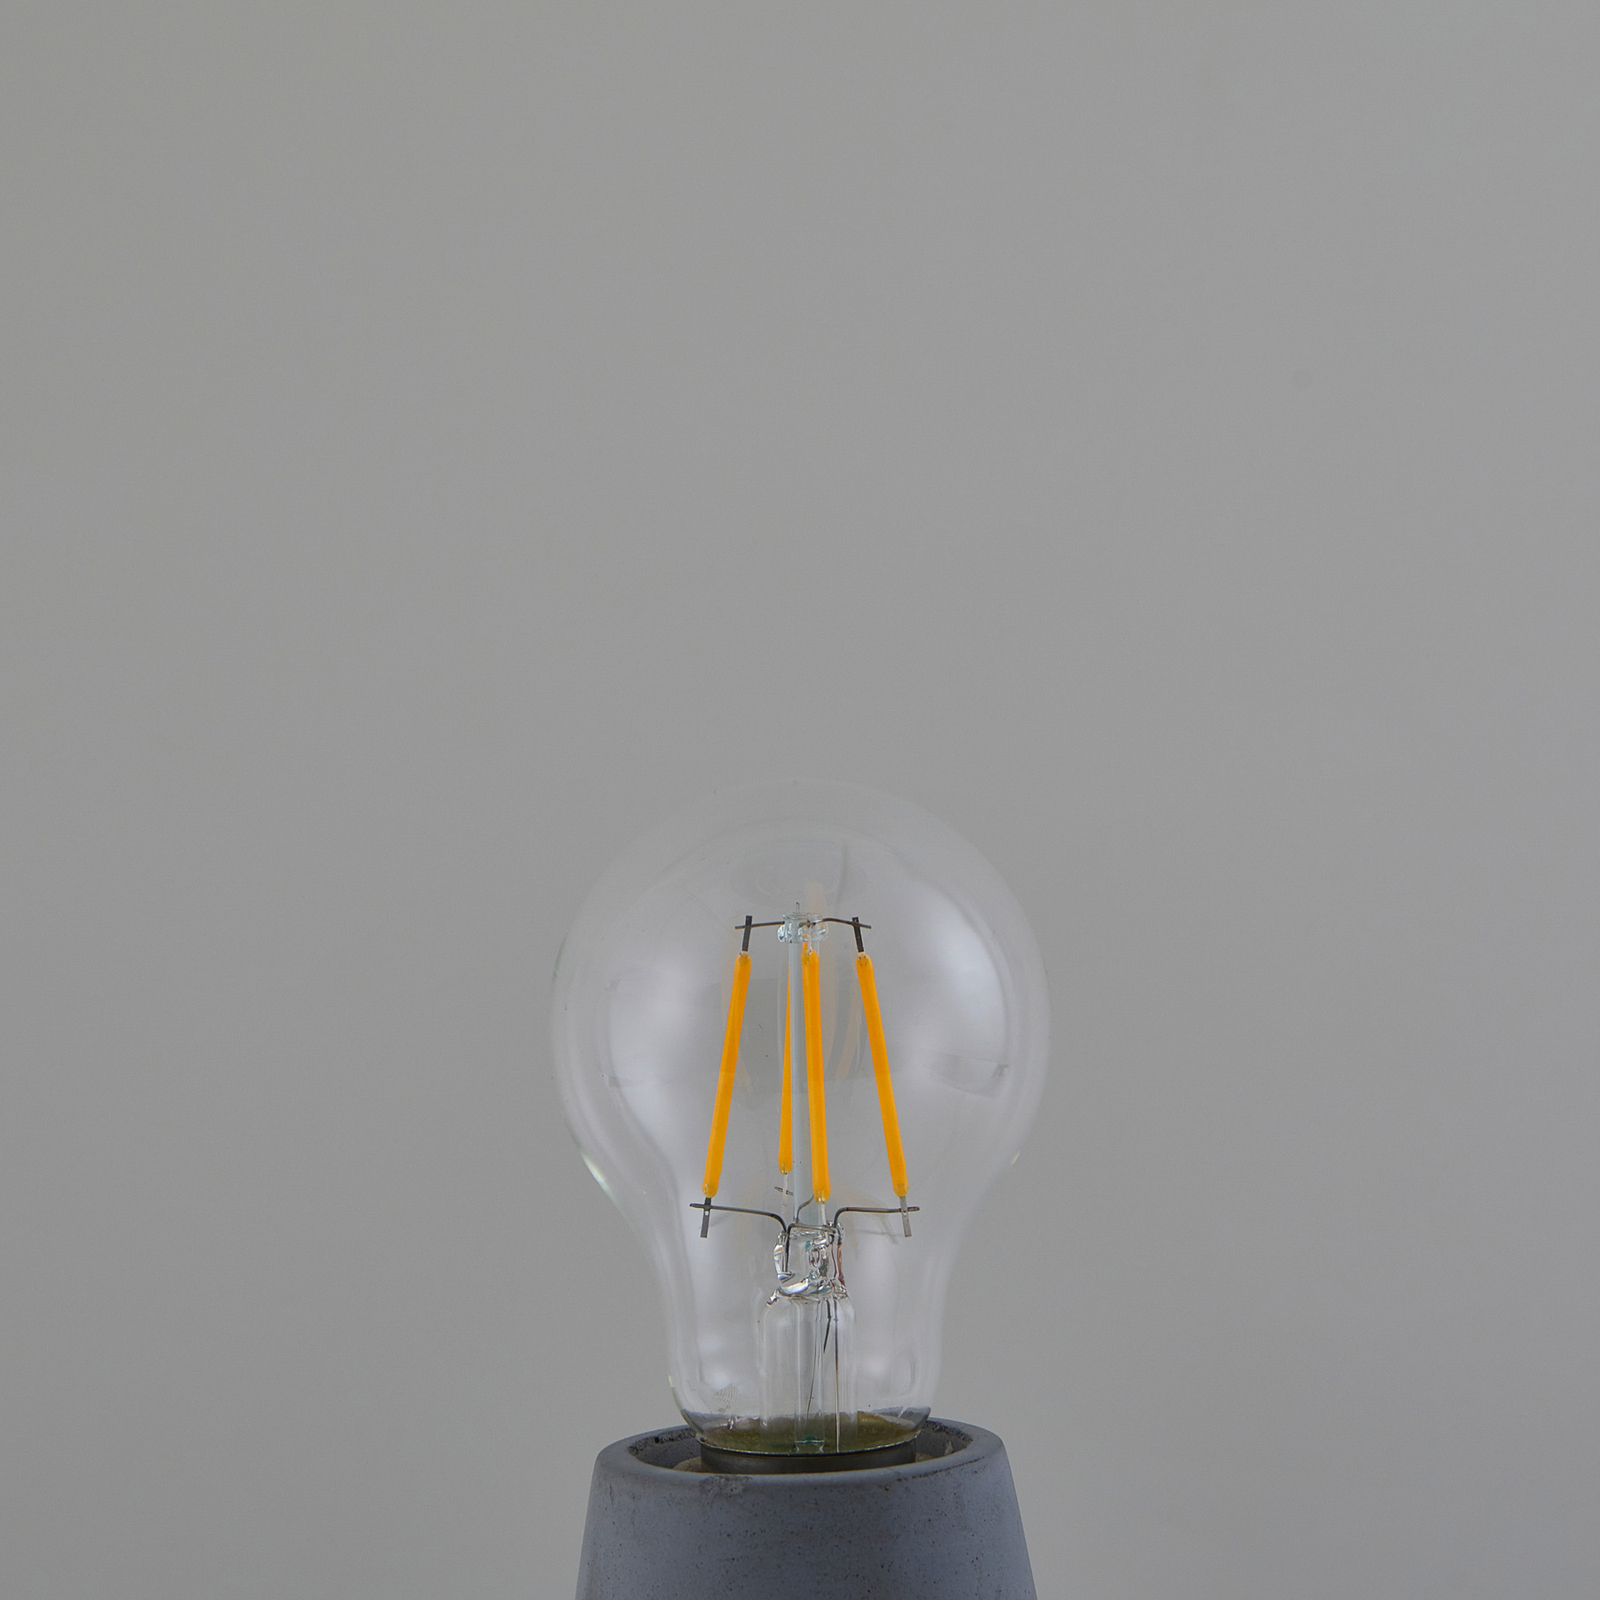 LED bulb Filament, clear, E27, 7.2 W, 4000K, 1521 lm